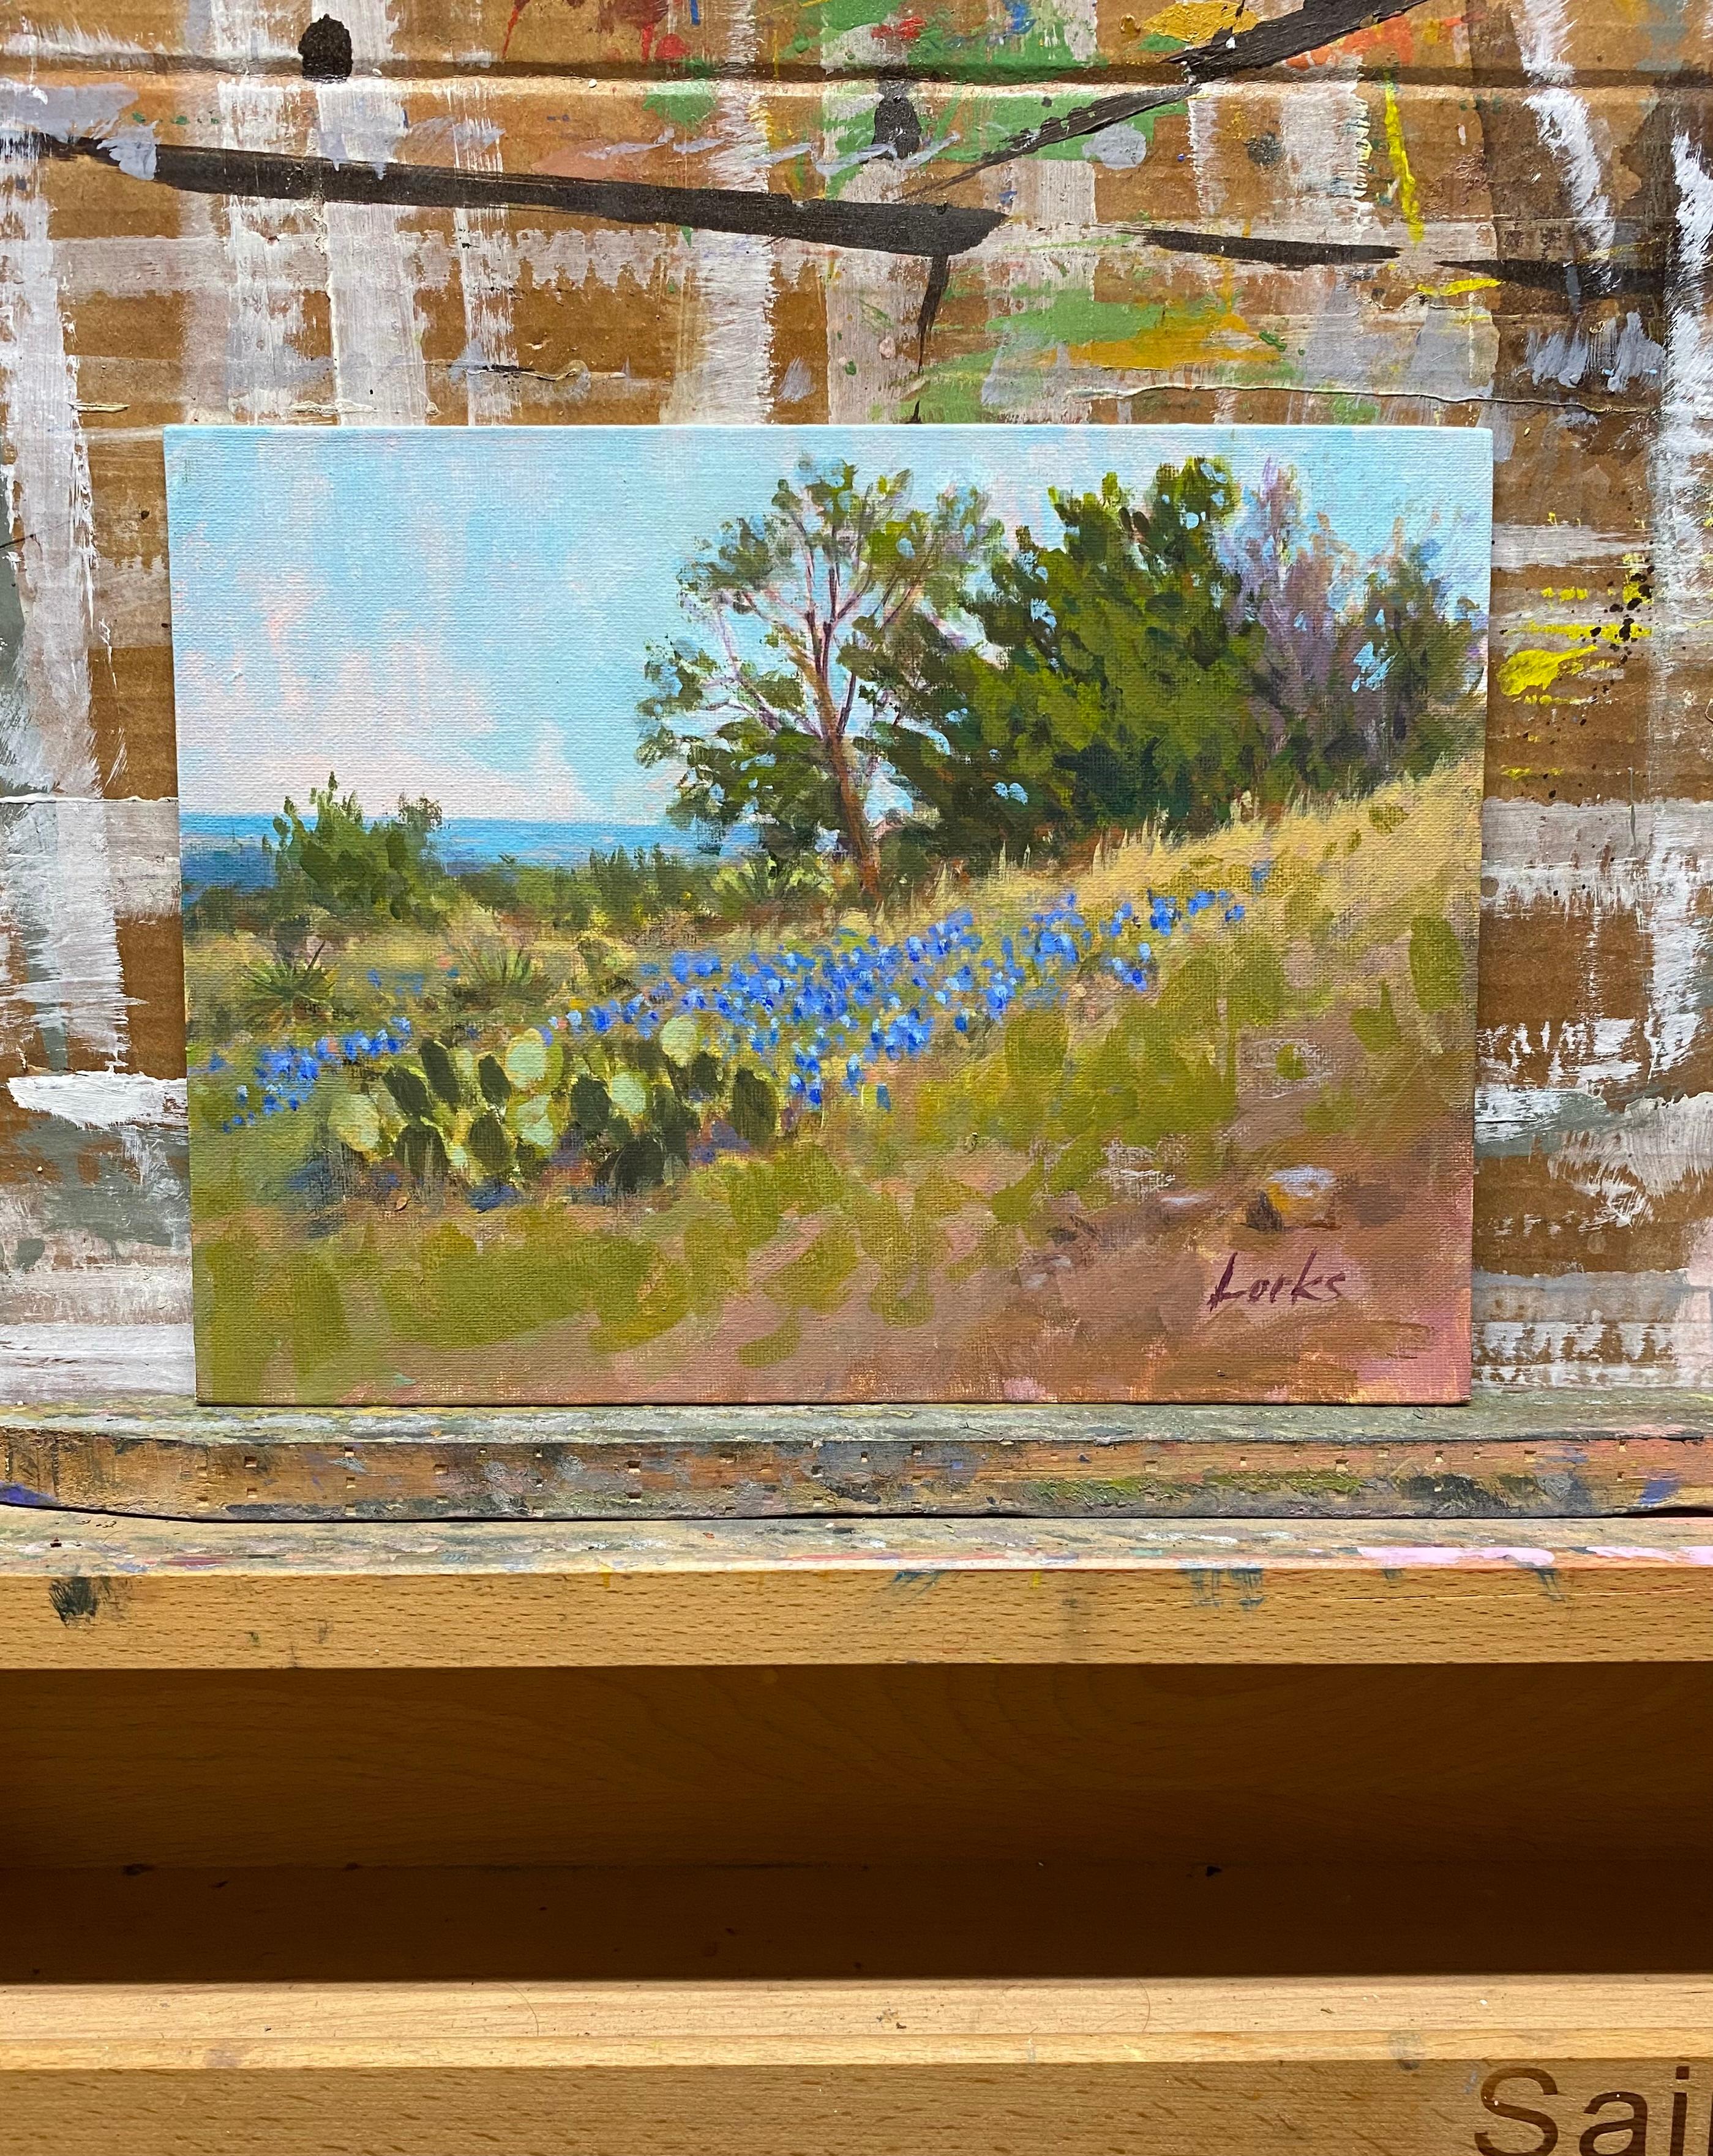 <p>Kommentare des Künstlers<br />Zedern, Blauglockenblumen und Kakteen zieren eine Hügelkuppe in der Nähe von Willow City, Texas. Durch den Rand des grasbewachsenen Bodens schaut ein Gewässer hervor. Die malerisch-impressionistische Darstellung der